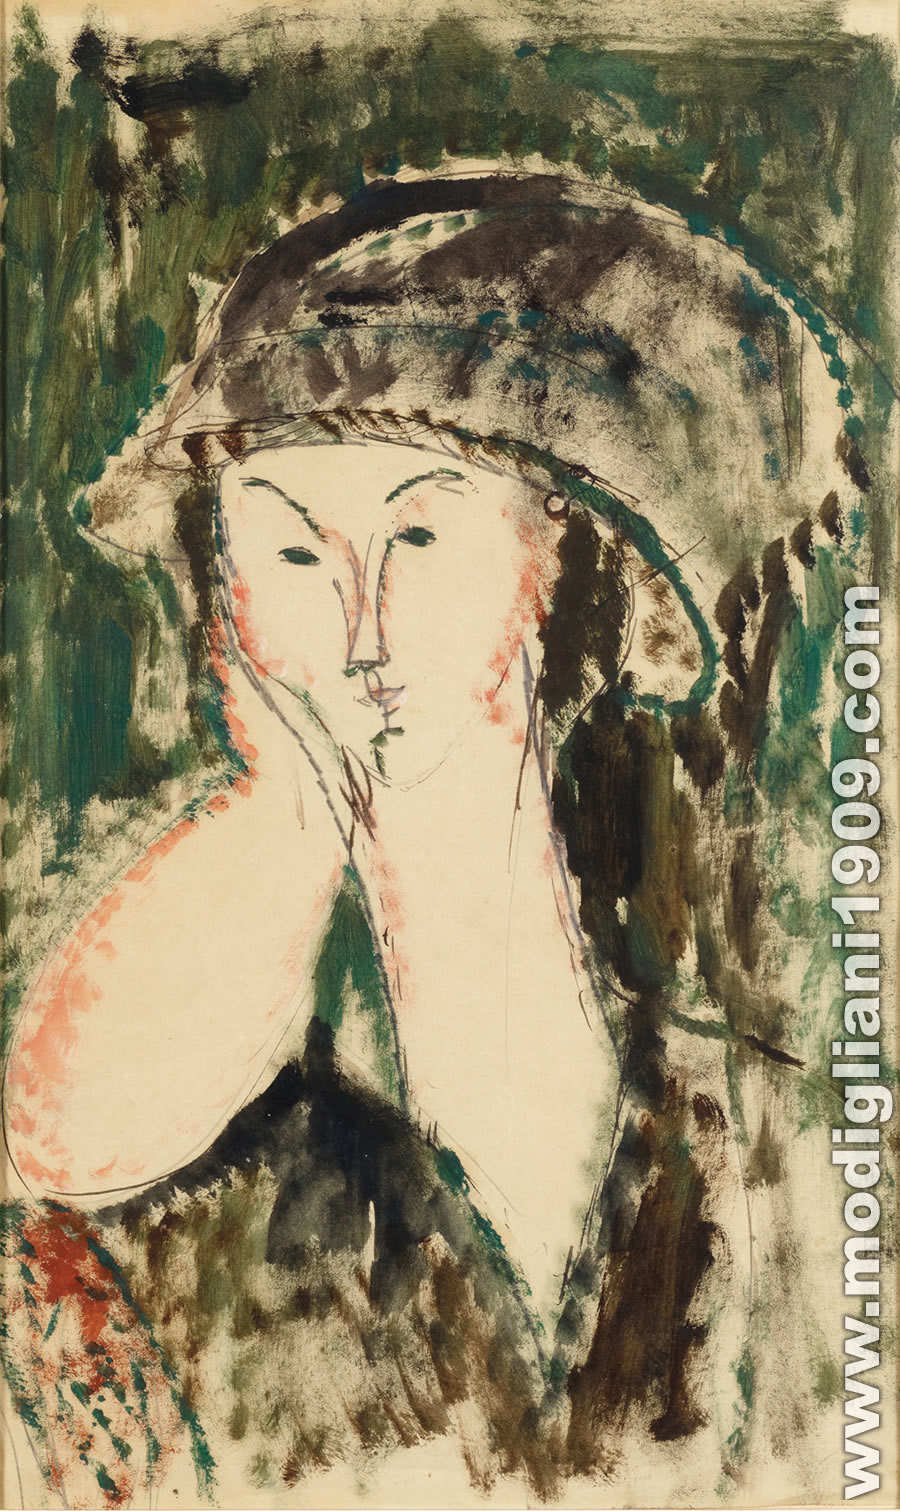 Amedeo Modigliani - Beatrice Hastings appoggiata al braccio sinistro 1915